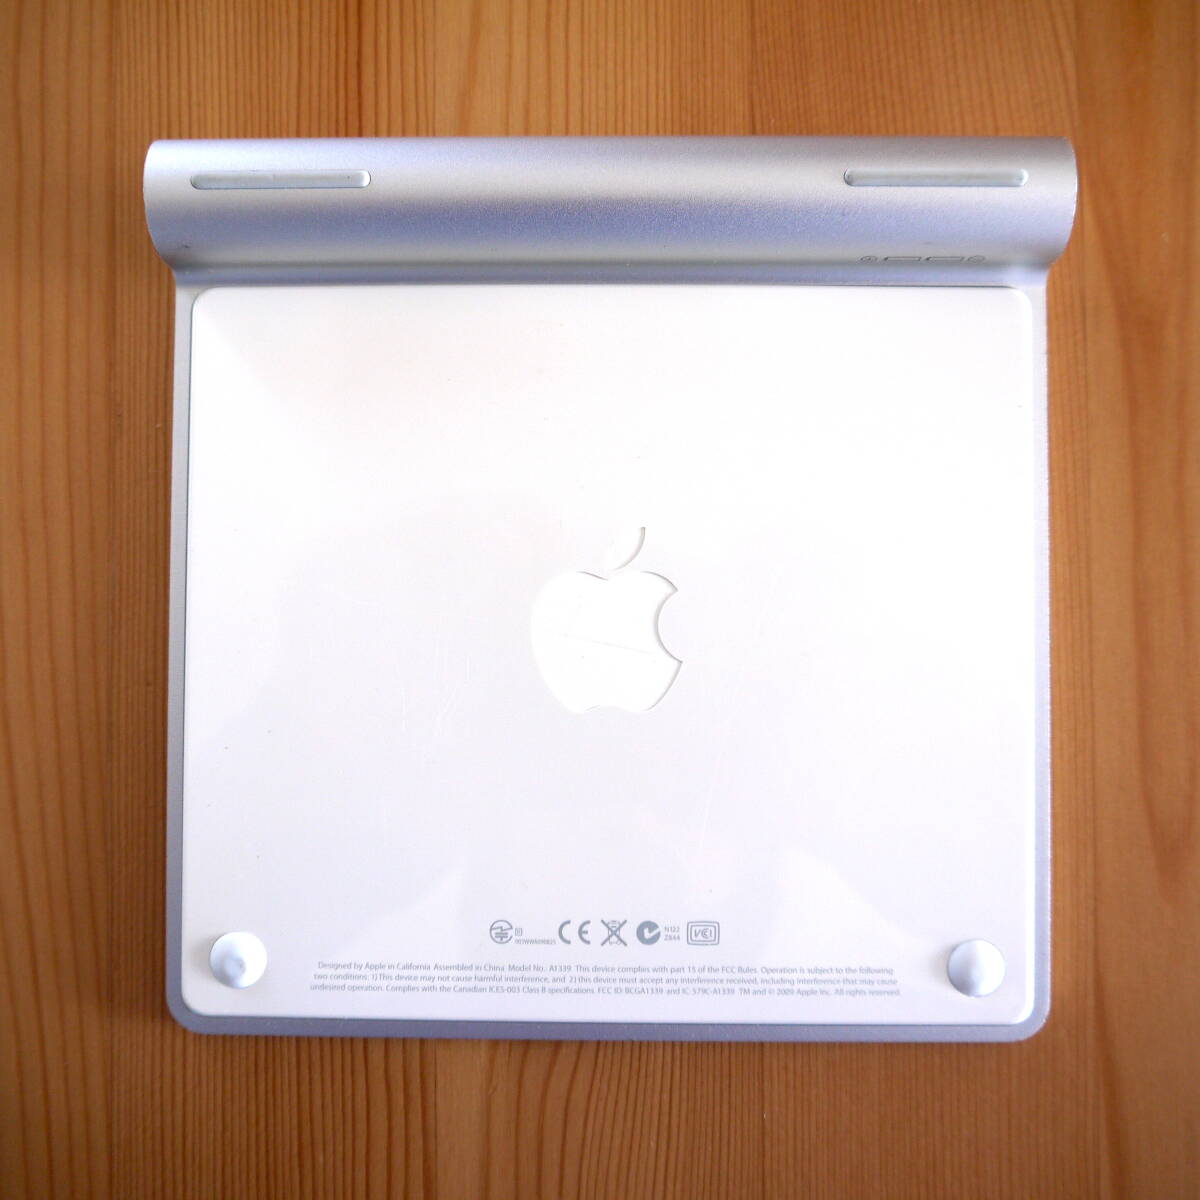 Apple Magic Trackpad　アップル マジック トラックパッド　アップル純正 iMac用〈 A1339 〉美品_画像4